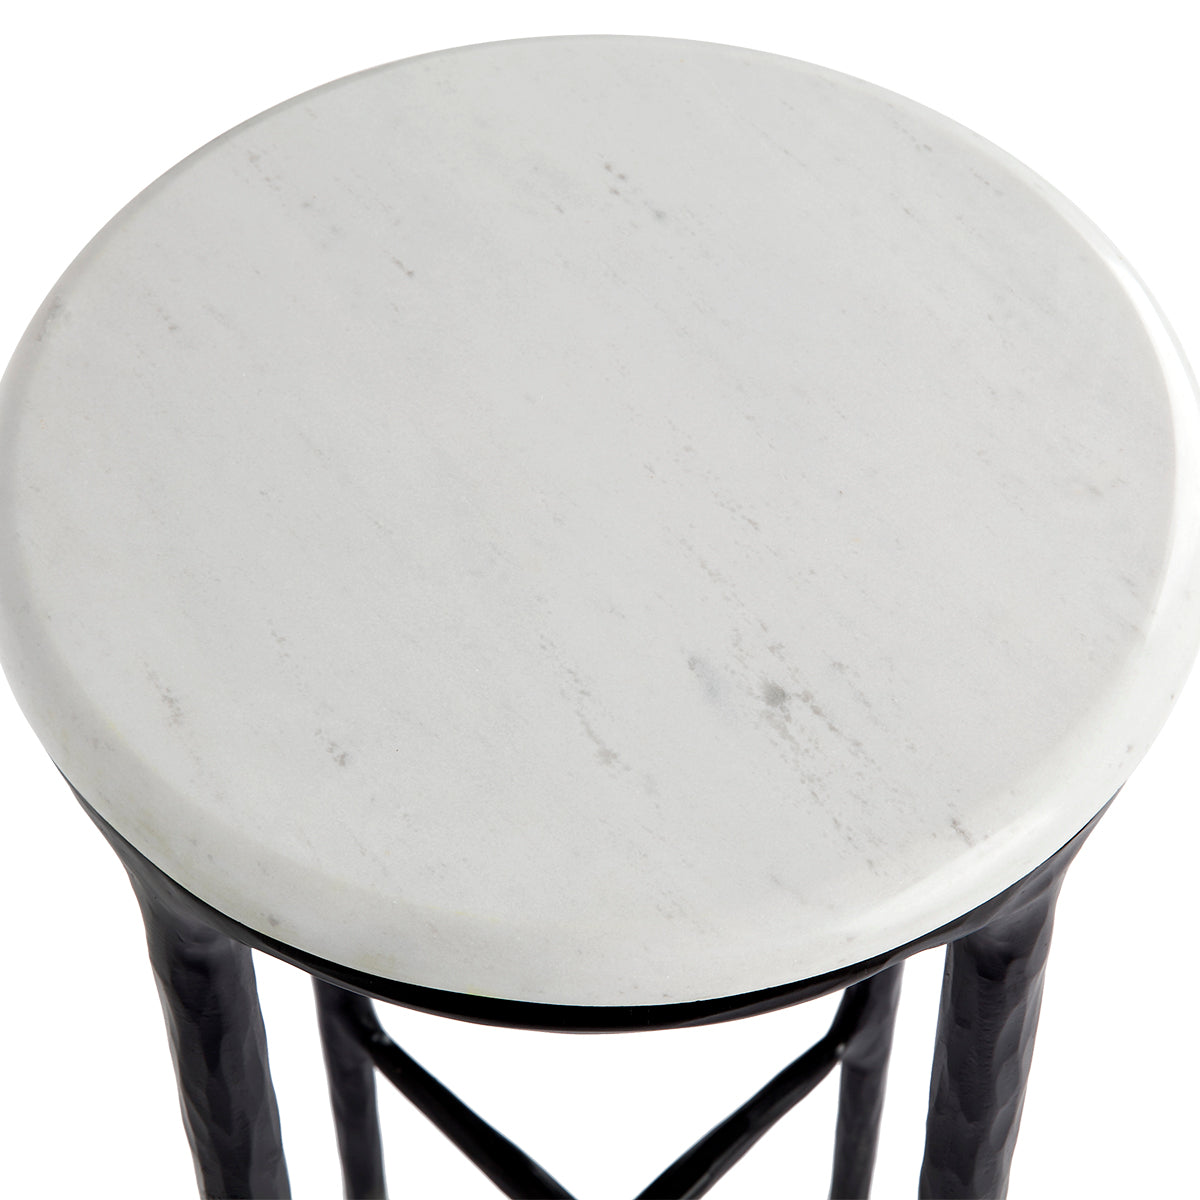 Heston Petite Marble Side Table - Black